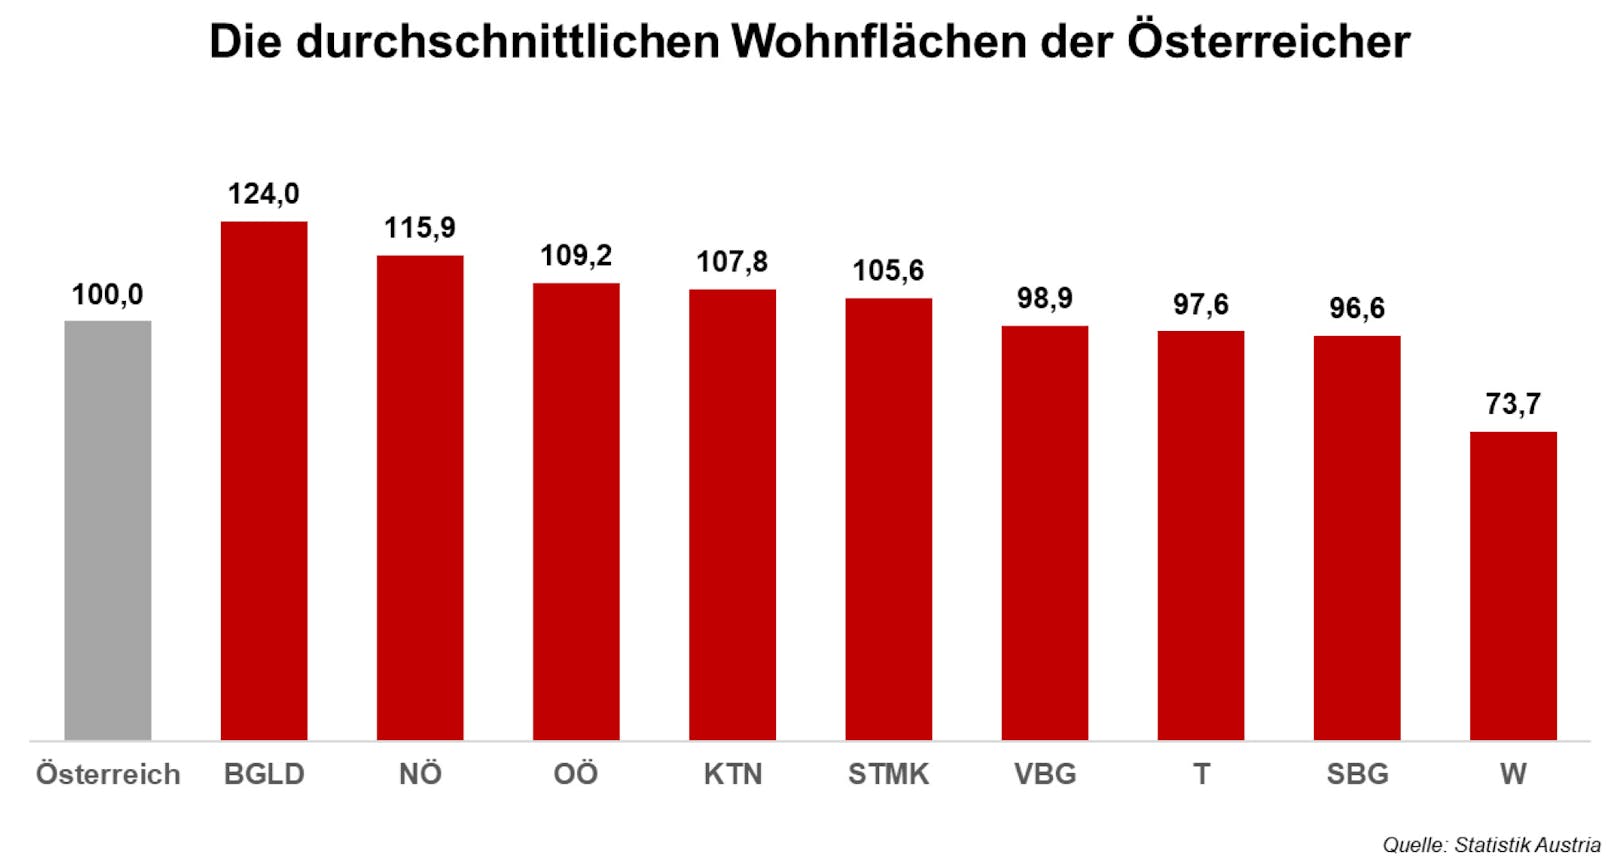 Österreicher wohnen im Schnitt auf 100 Quadratmetern